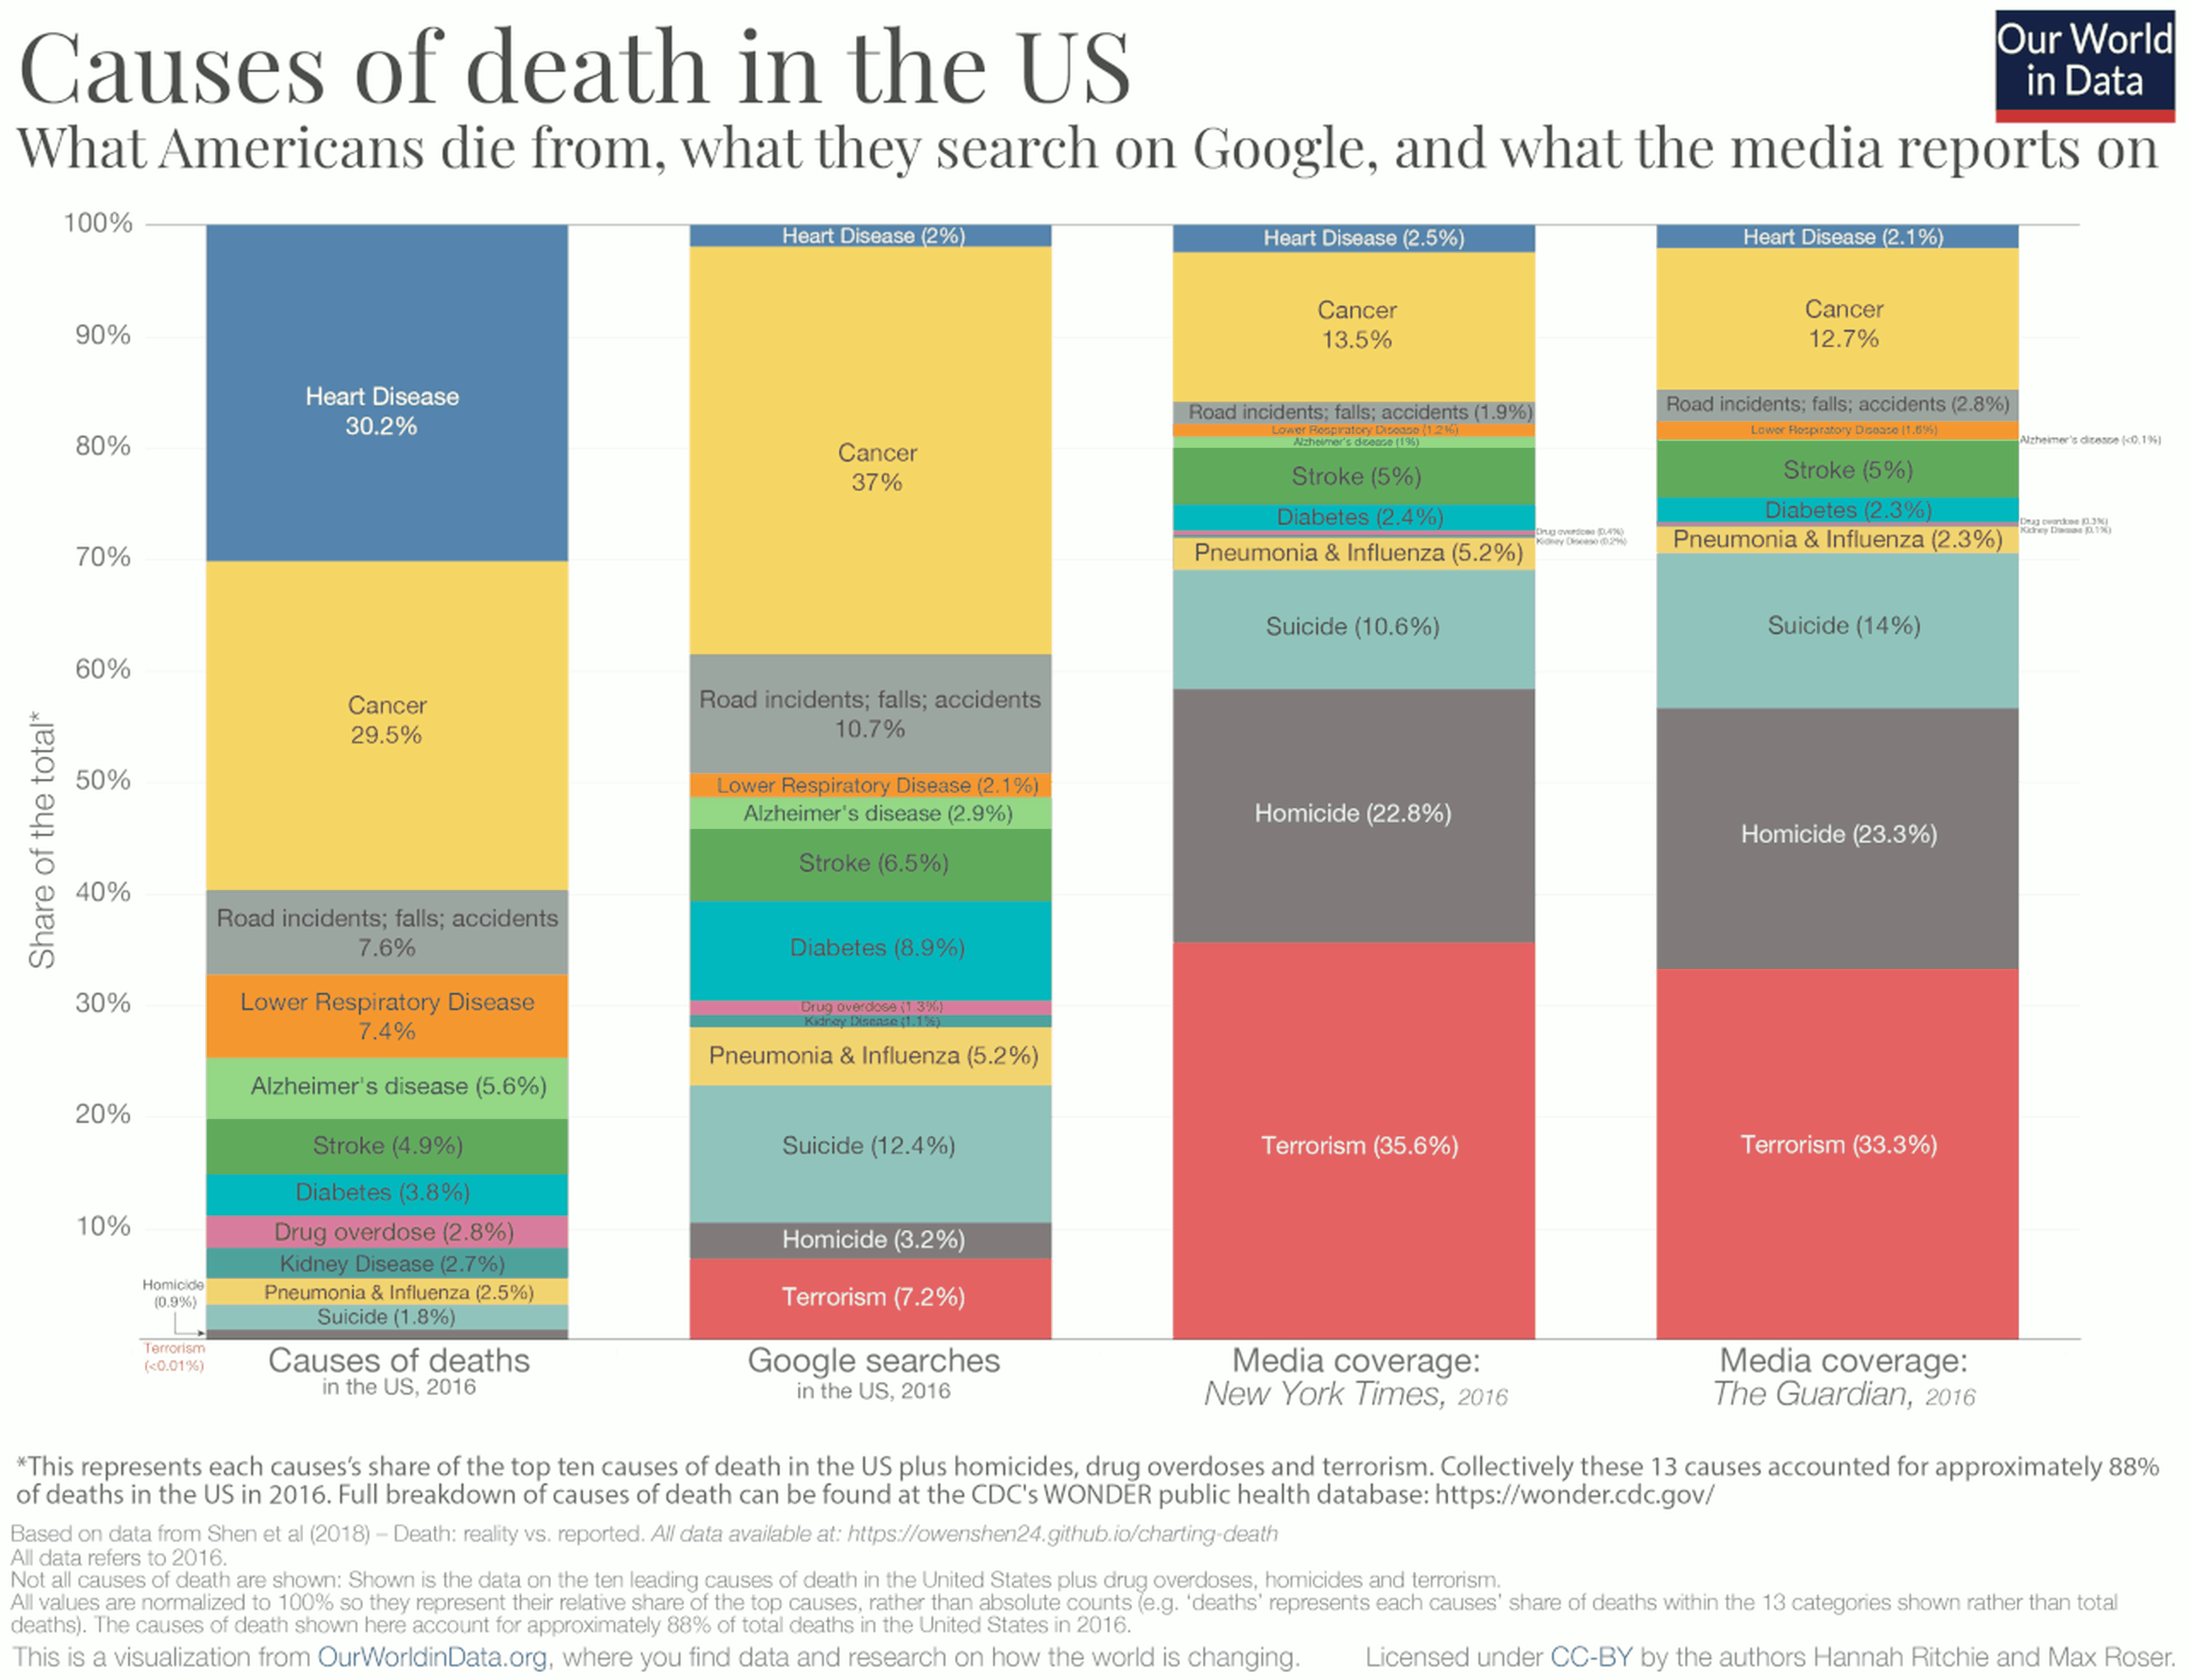 Las principales causas de mortalidad y su presencia en medios.